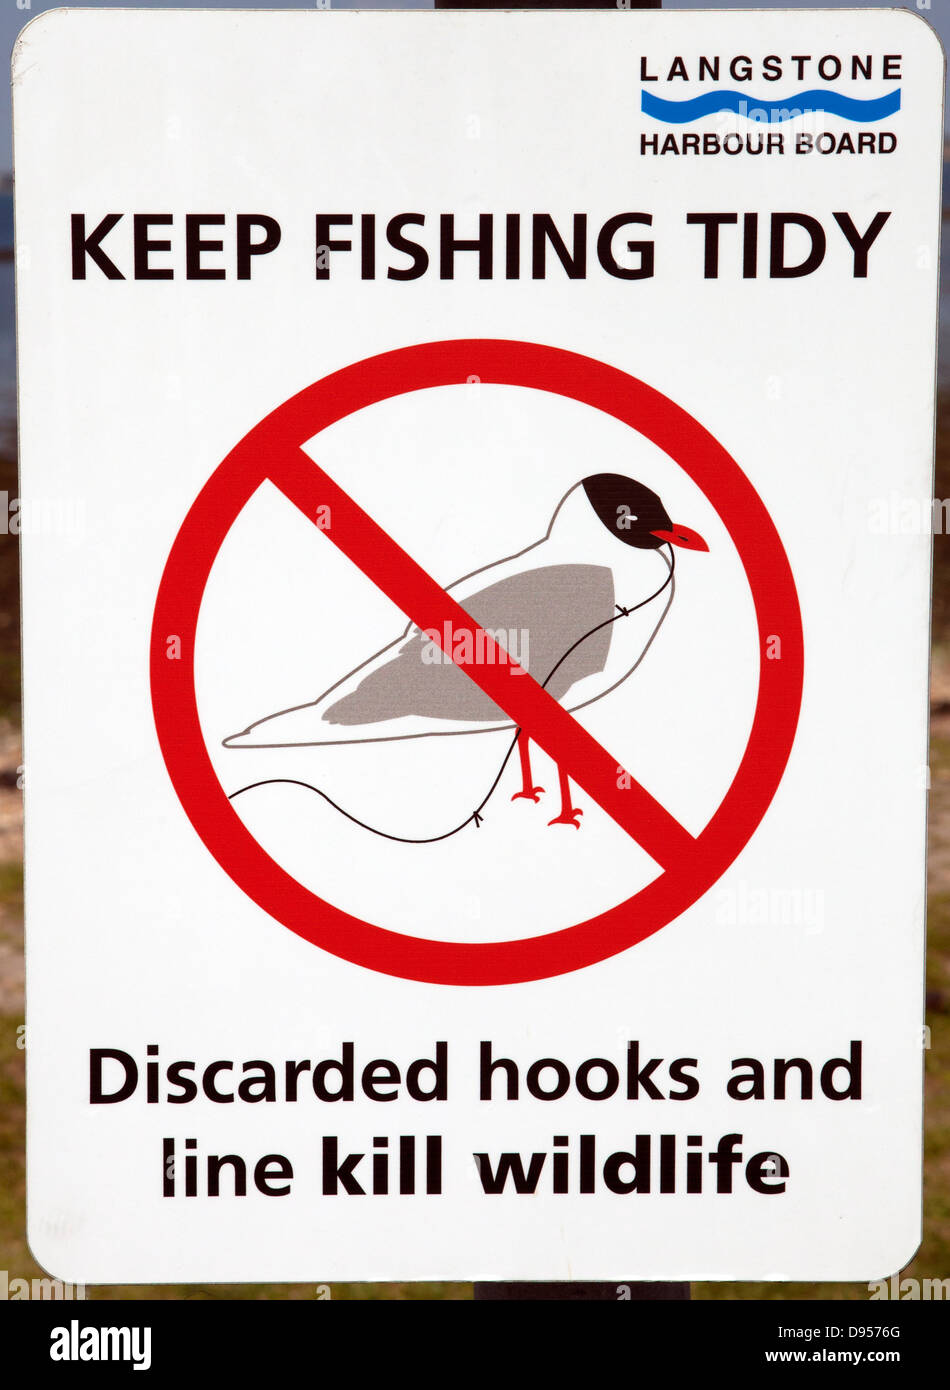 Pêche à garder propre, le port de signes Langstone Hayling Island, Hampshire, Royaume-Uni Banque D'Images